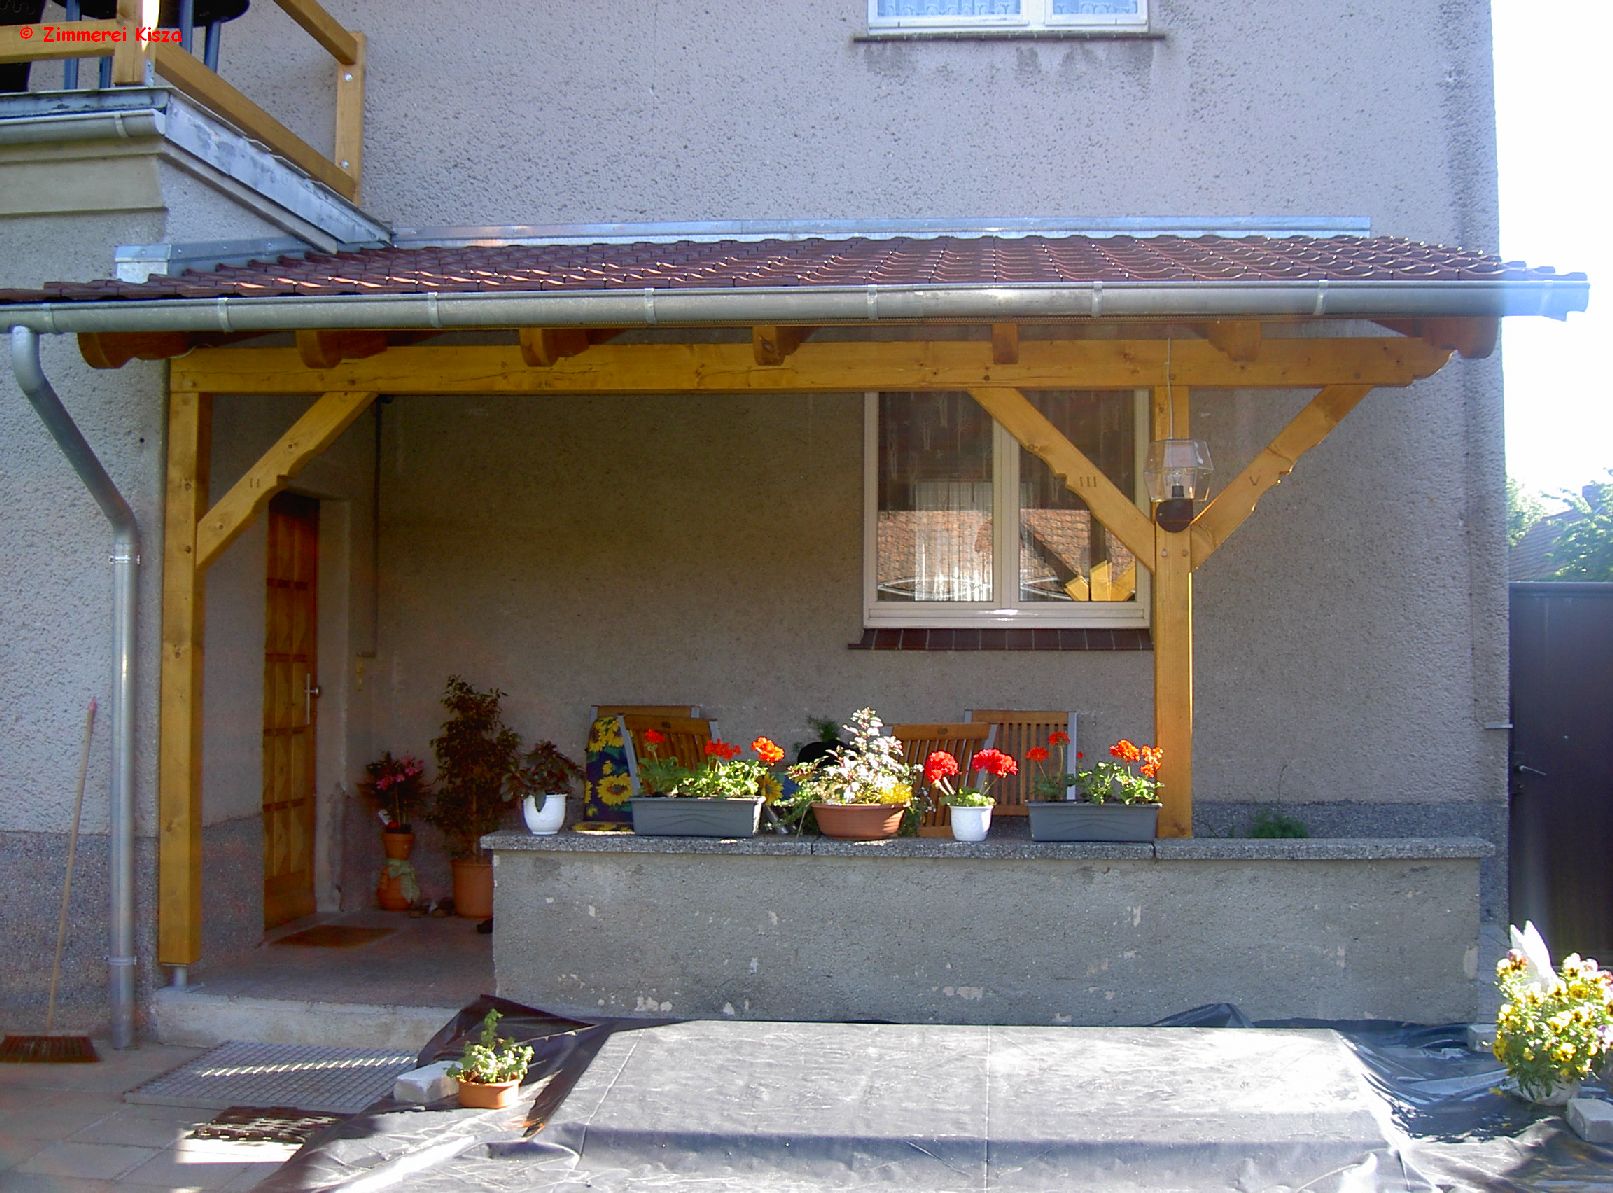 Überdächer - schützen die Haustür